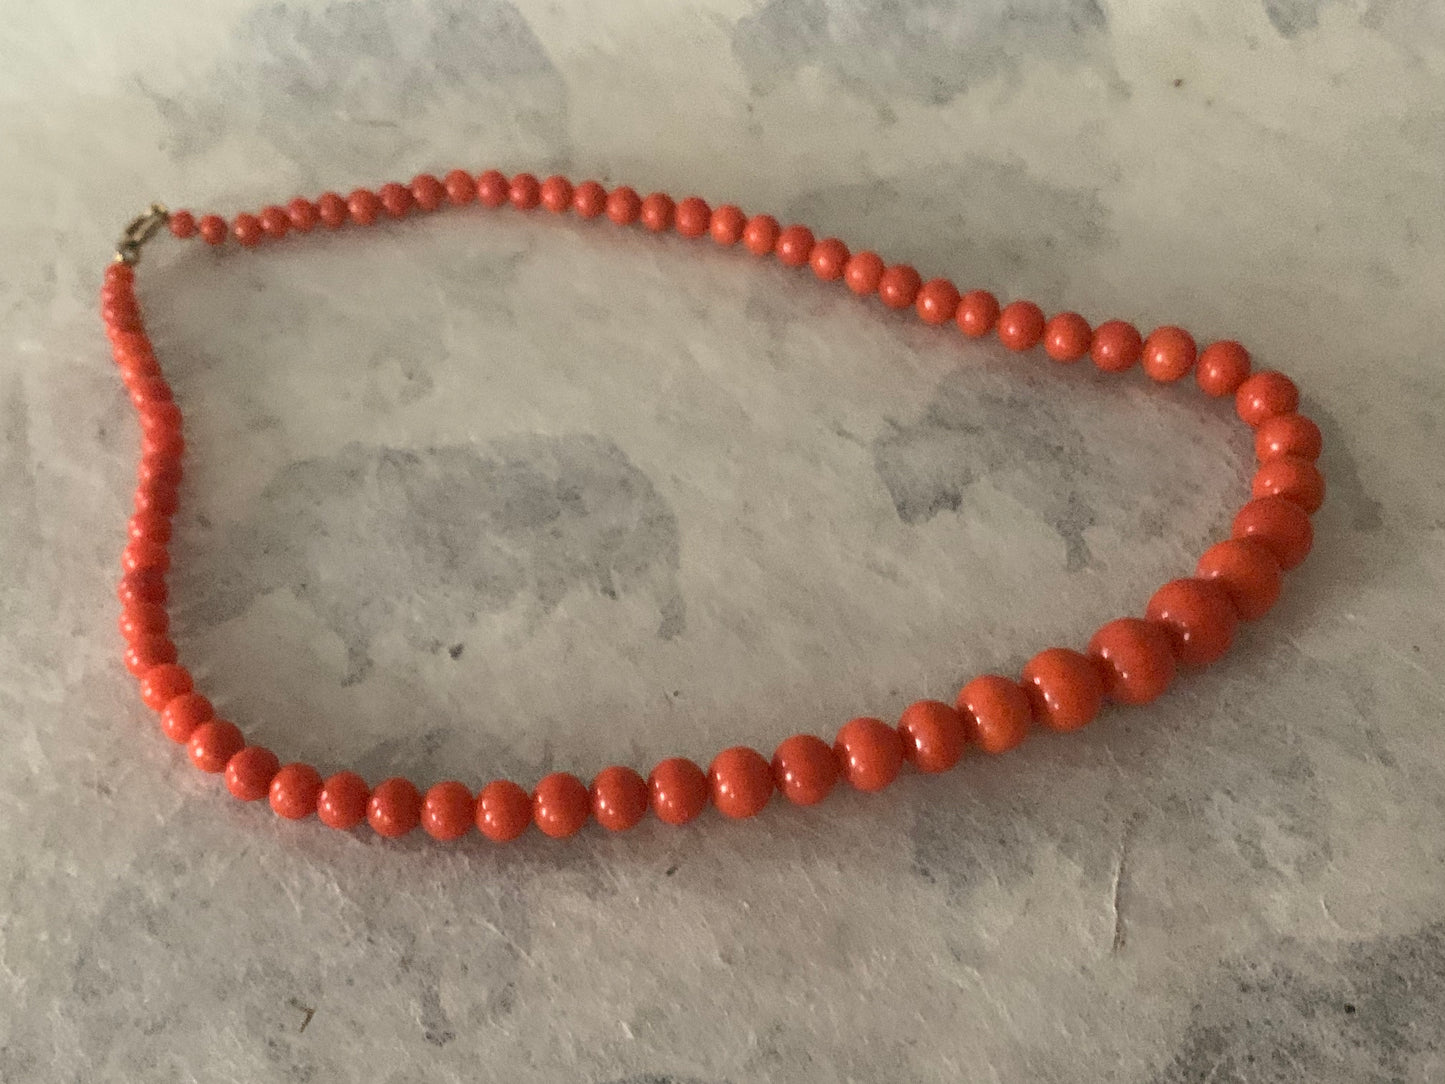 A 16” long antique coral necklace